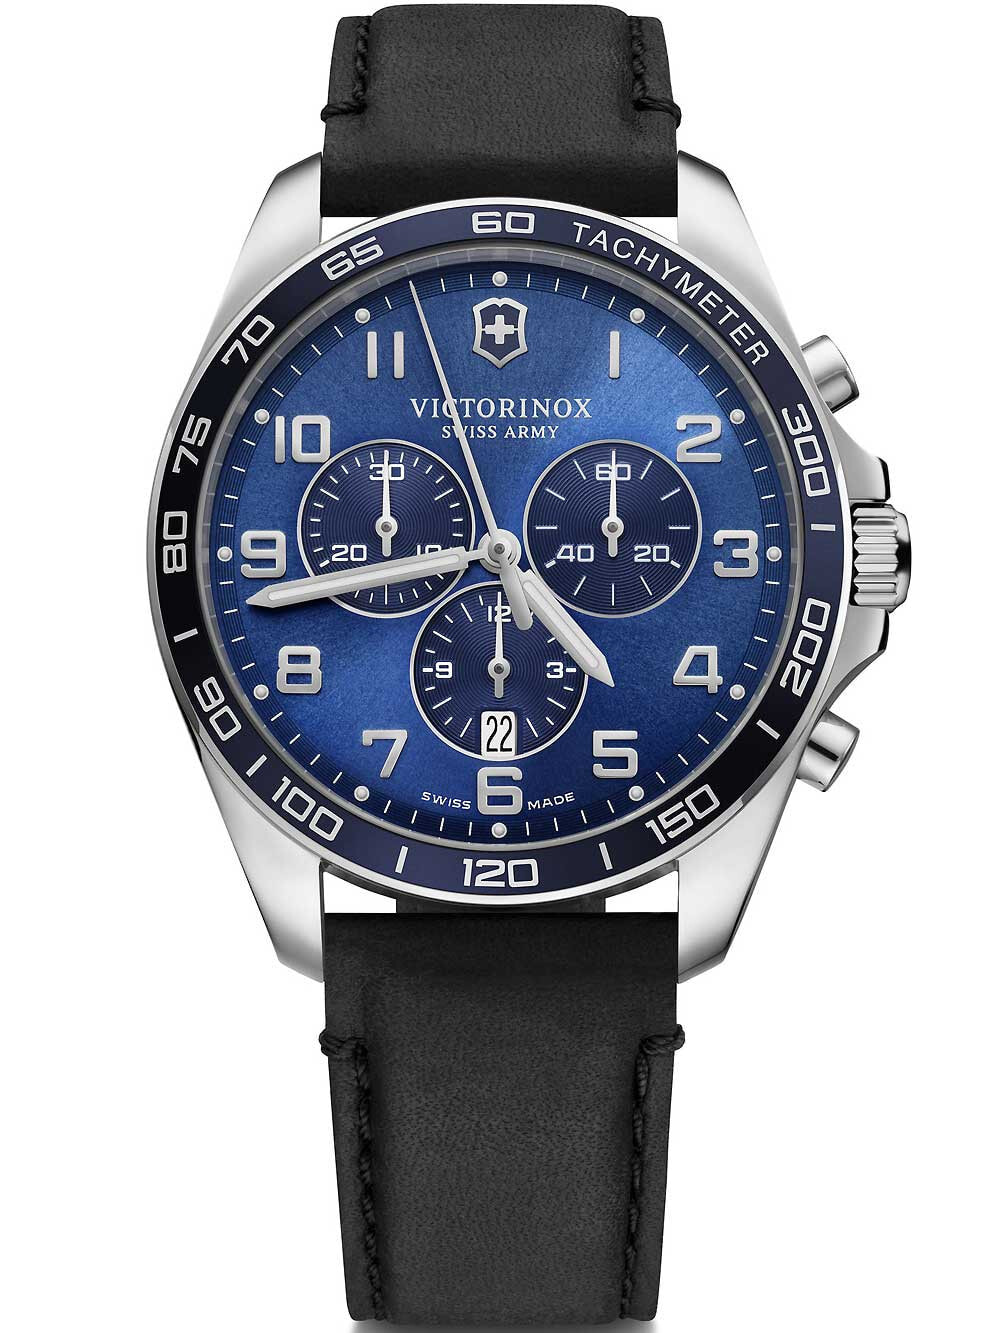 Мужские наручные часы с черным кожаным ремешком Victorinox 241929 Fieldforce chronograph 42mm 10ATM